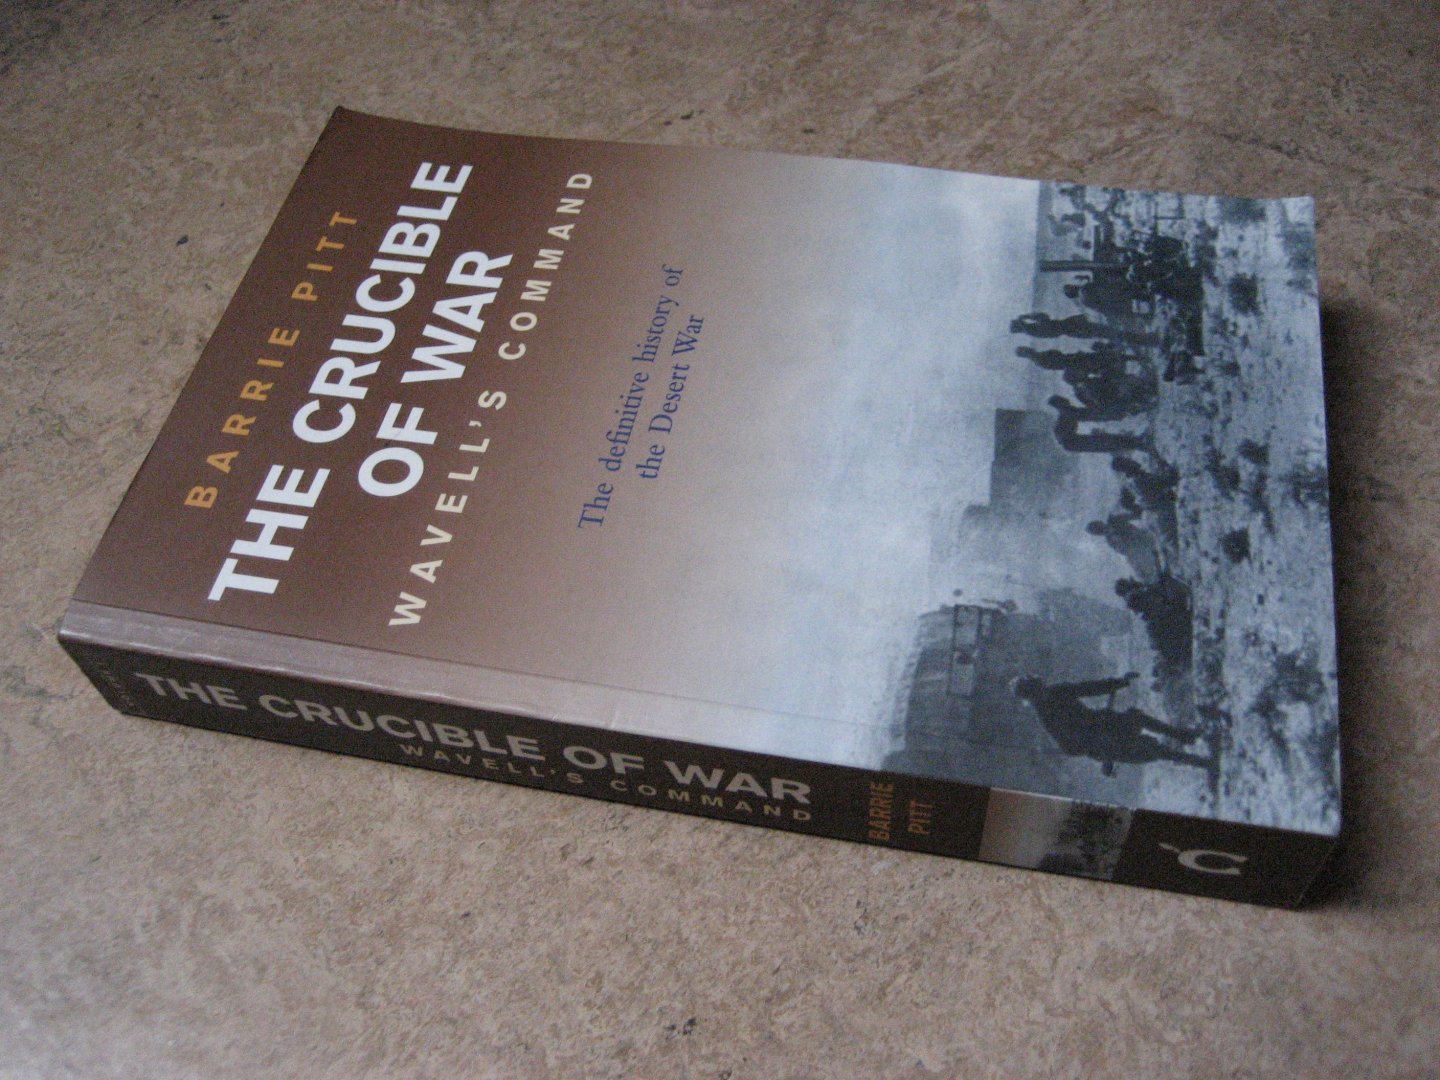 Pitt, Barrie - The Crucible of War vol.1 : Wavell's Command